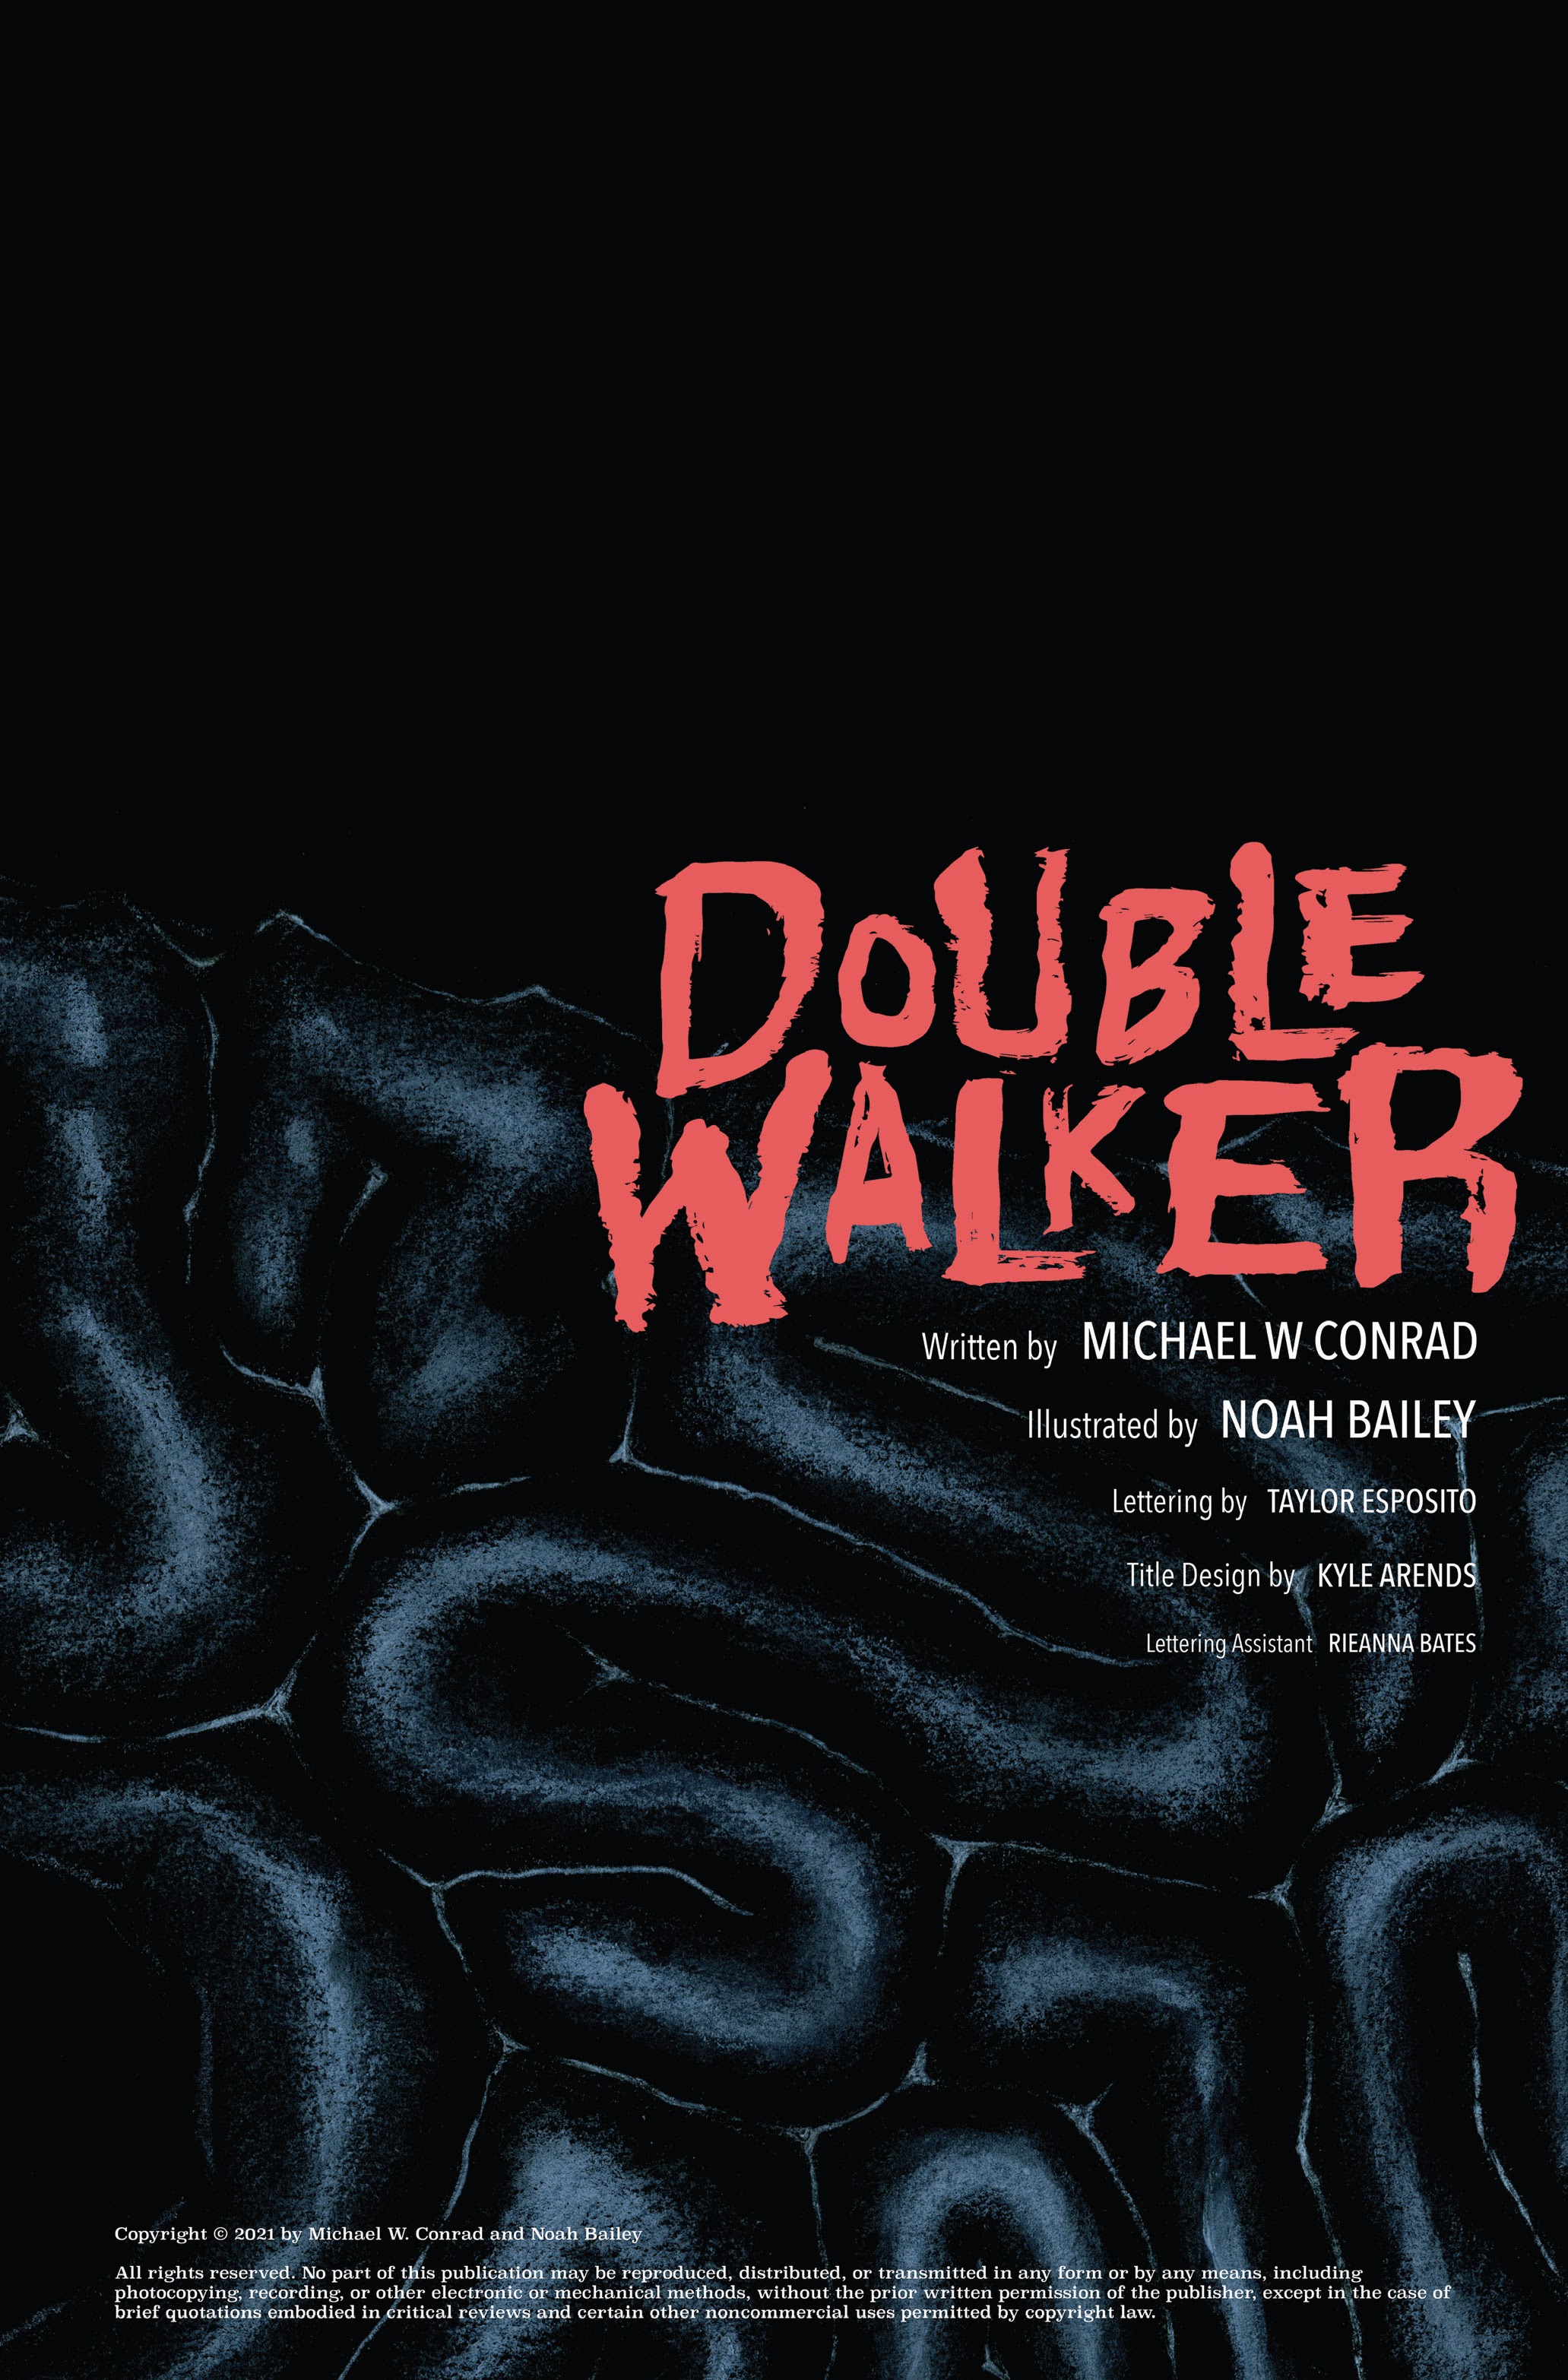 Read online Double Walker comic -  Issue # TPB - 2